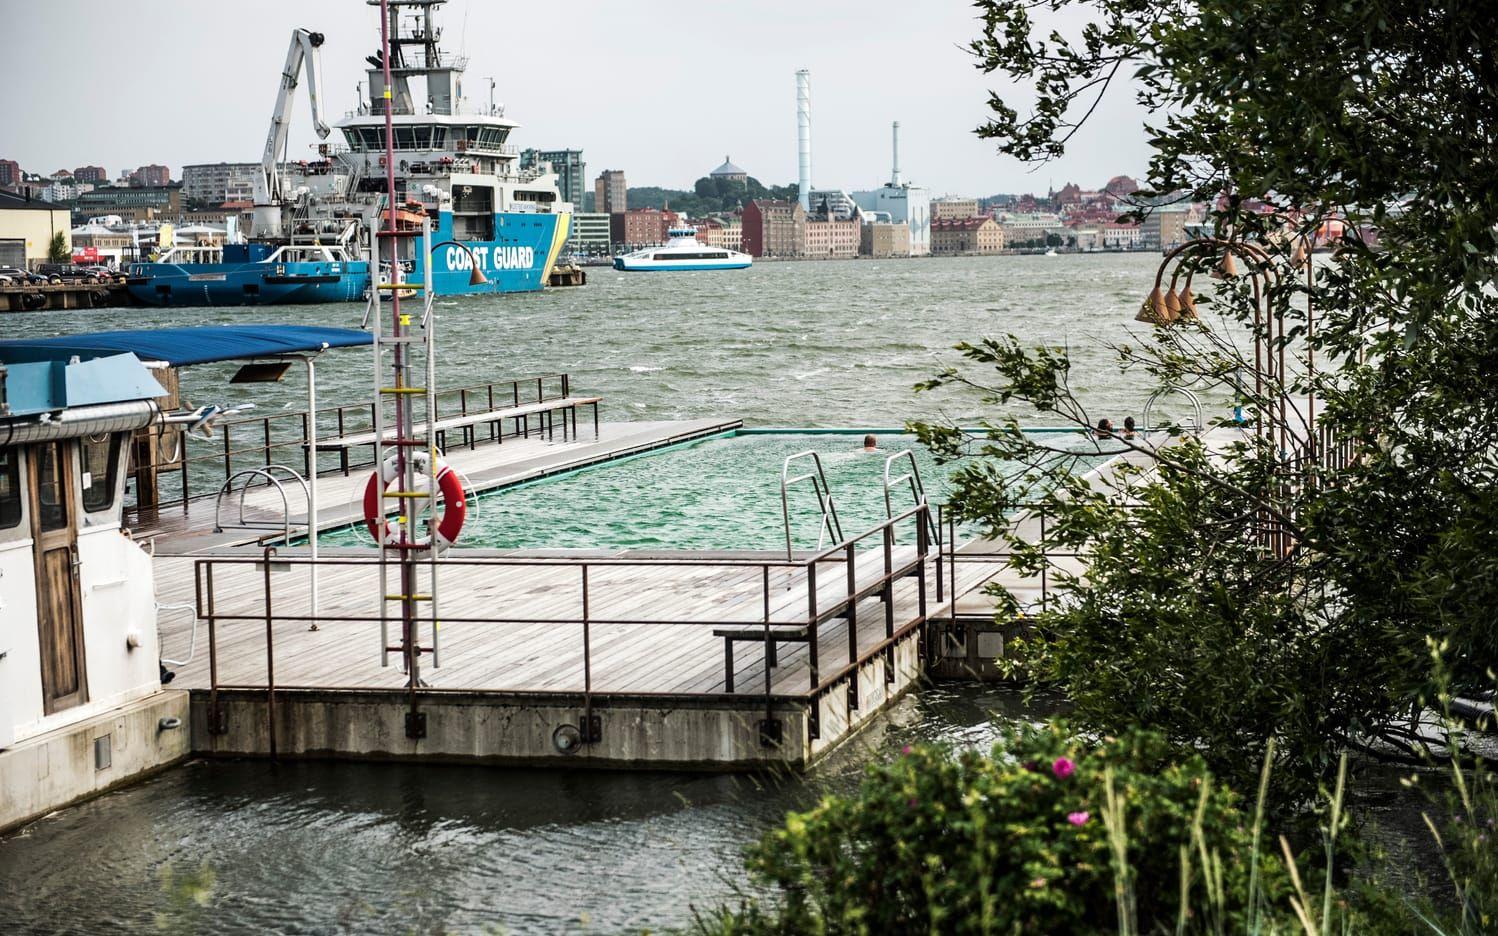 Viktigt med säkerhet vid och i vattnet. Runt Göteborg finns mycket vatten och simkunskap är viktigt för att känna sig trygg och veta vad man ska göra om det händer något i vattnet.